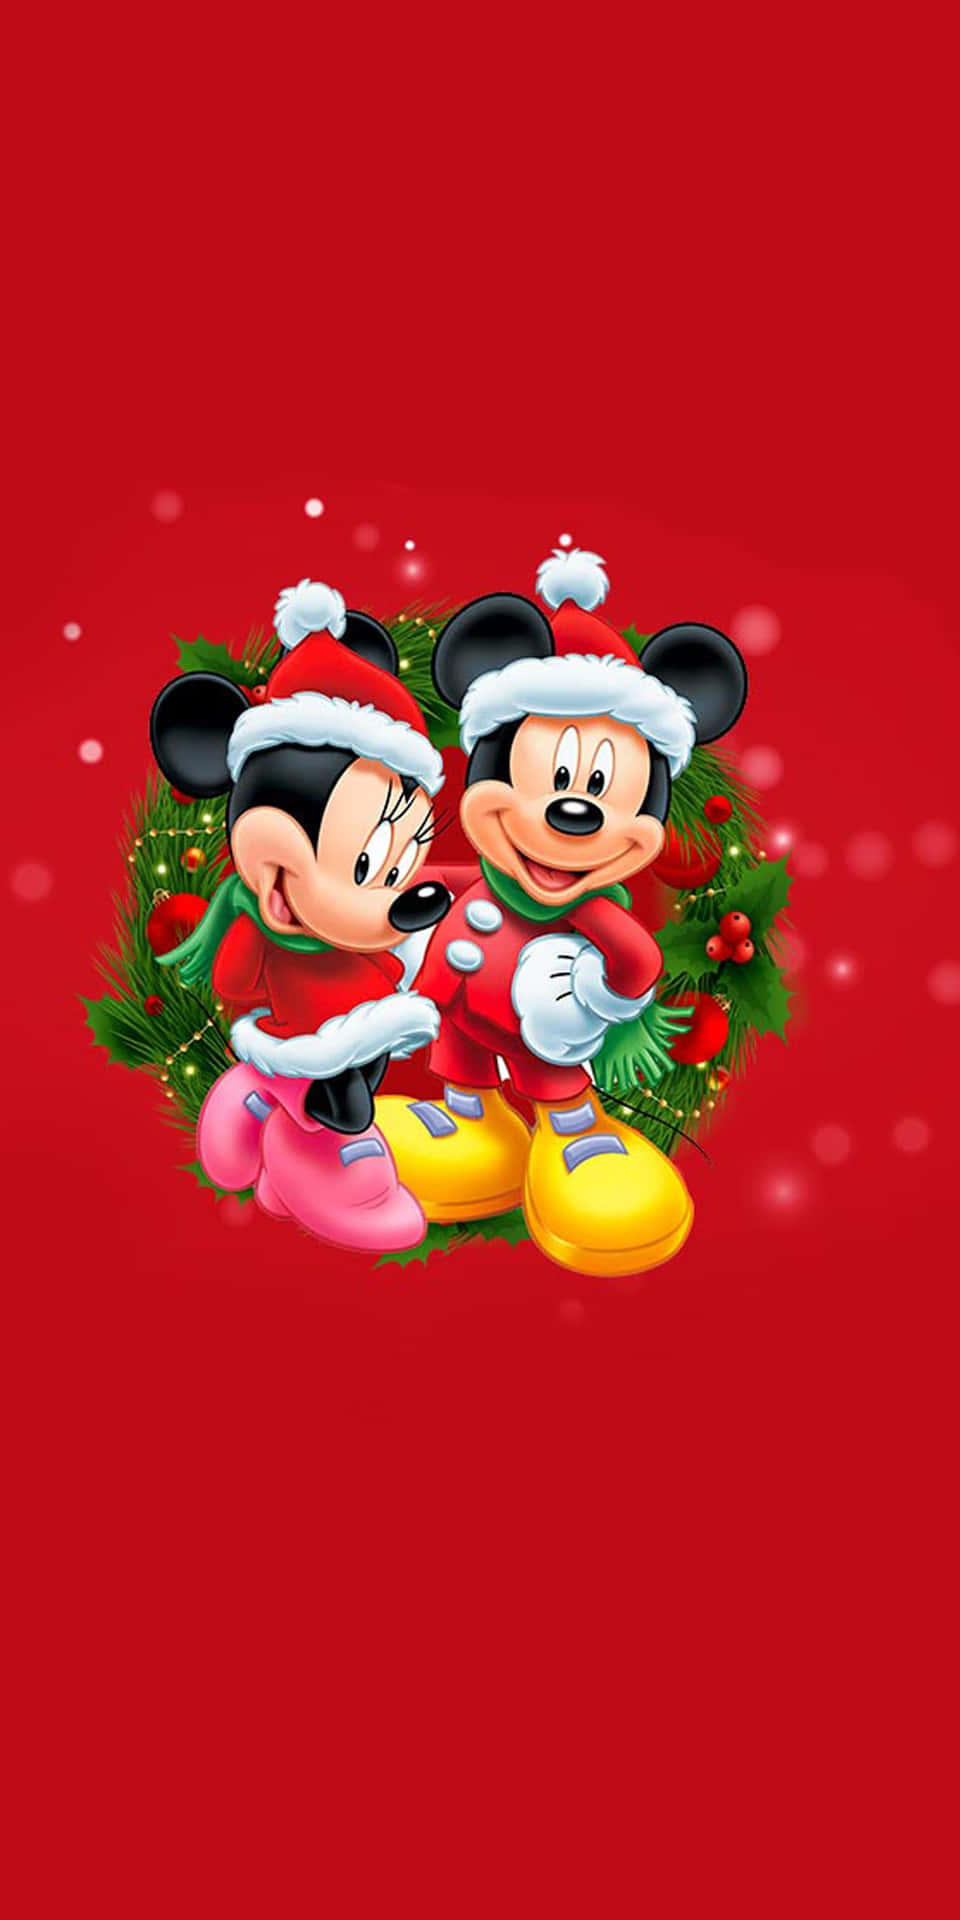 Beginnedeine Feiertage Mit Disney-weihnachten Auf Deinem Ipad! Wallpaper